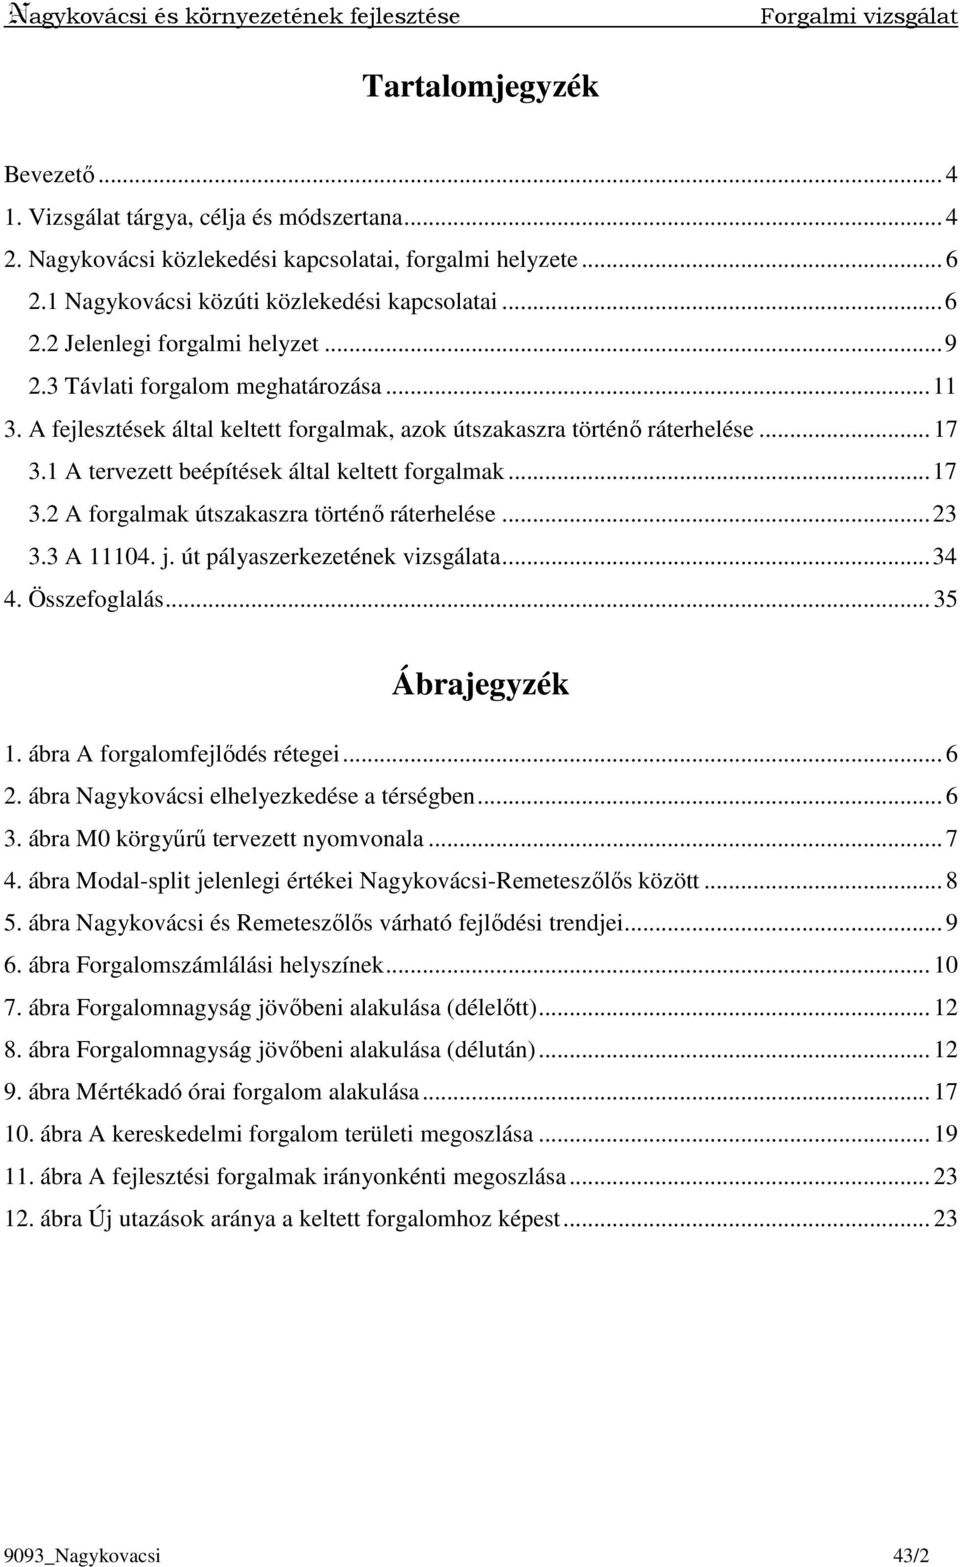 Nagykovácsi és környezetének fejlesztései. Forgalmi vizsgálat - PDF  Ingyenes letöltés